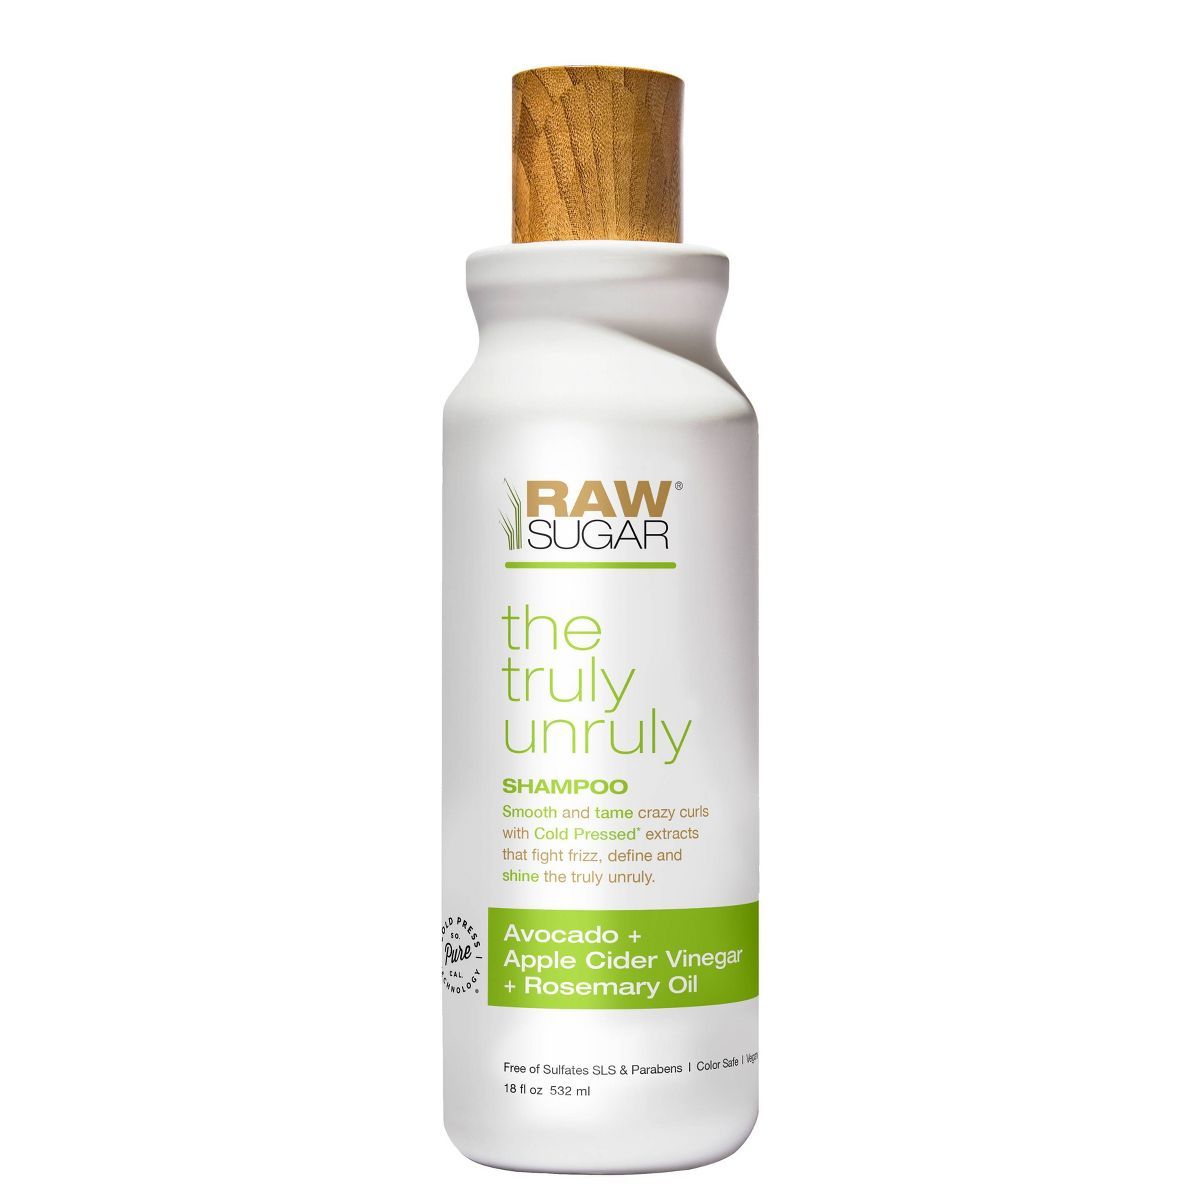 Raw Sugar Shampoo Truly Unruly Avocado + Apple Cider Vinegar + Rosemary Oil - 18 fl oz | Target